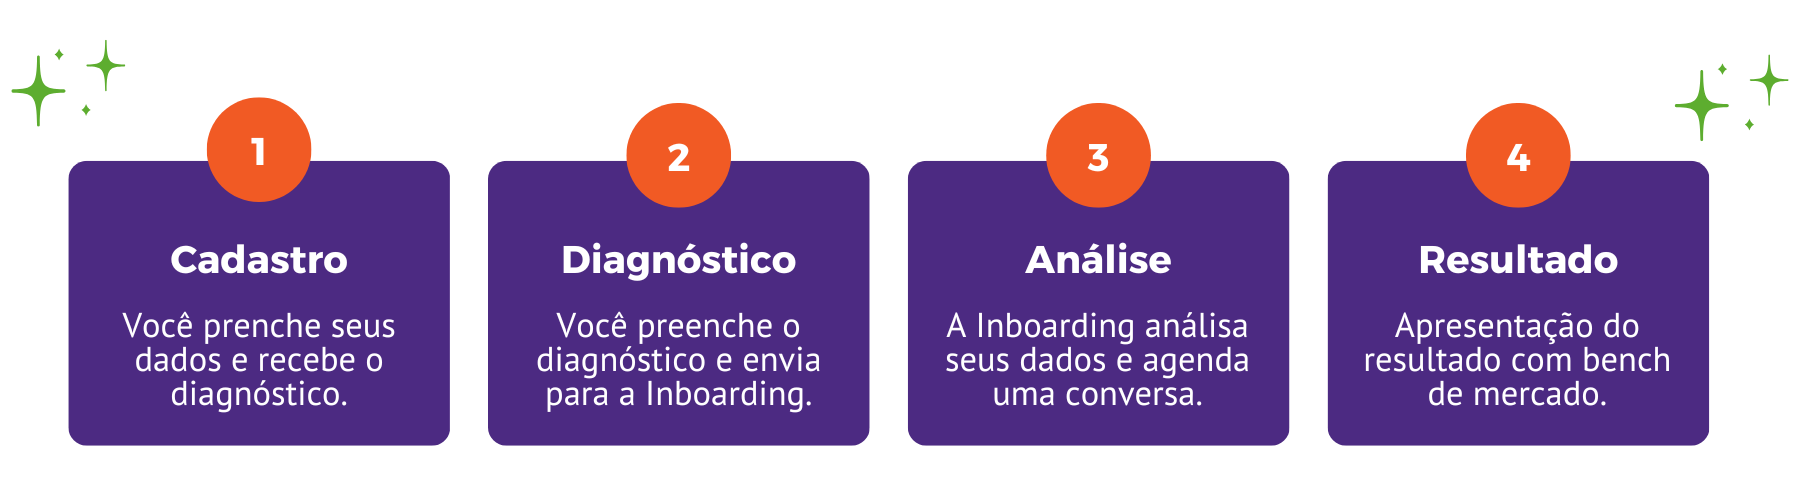 Diagnóstico gratuito em 4 etapas. 1 - Cadastro. 2 - Preenche e envia para a Inboarding. 3 - Inboarding análisa e agenda uma conversa. 4 - Apresentação do resultado.